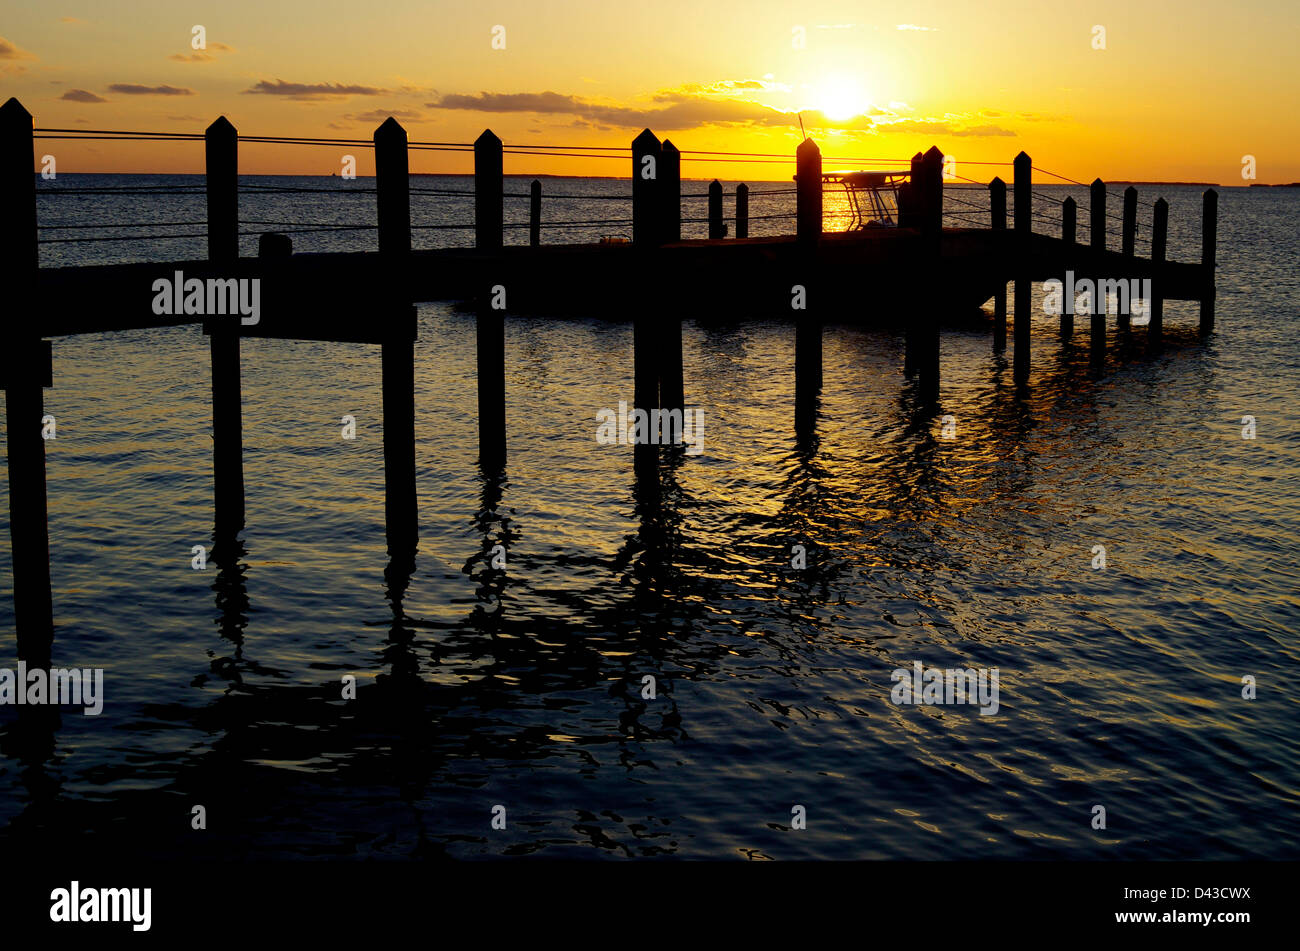 Sunset over docks in Tavernier, Florida Keys Stock Photo